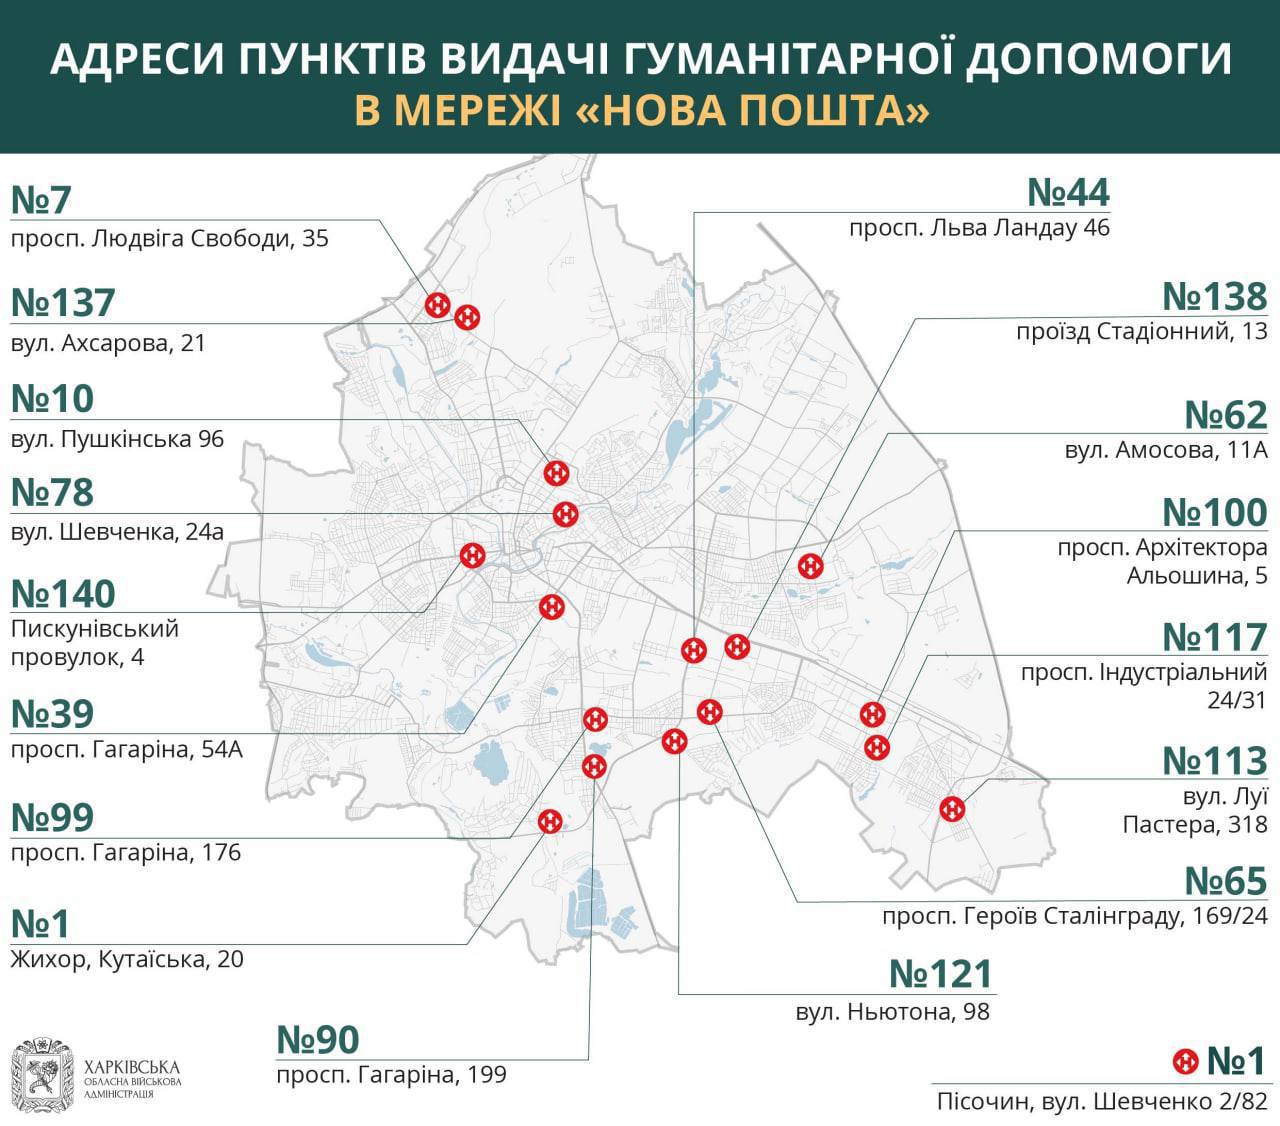 Адреса пунктов выдачи гуманитарной помощи в «Новой Почте»: